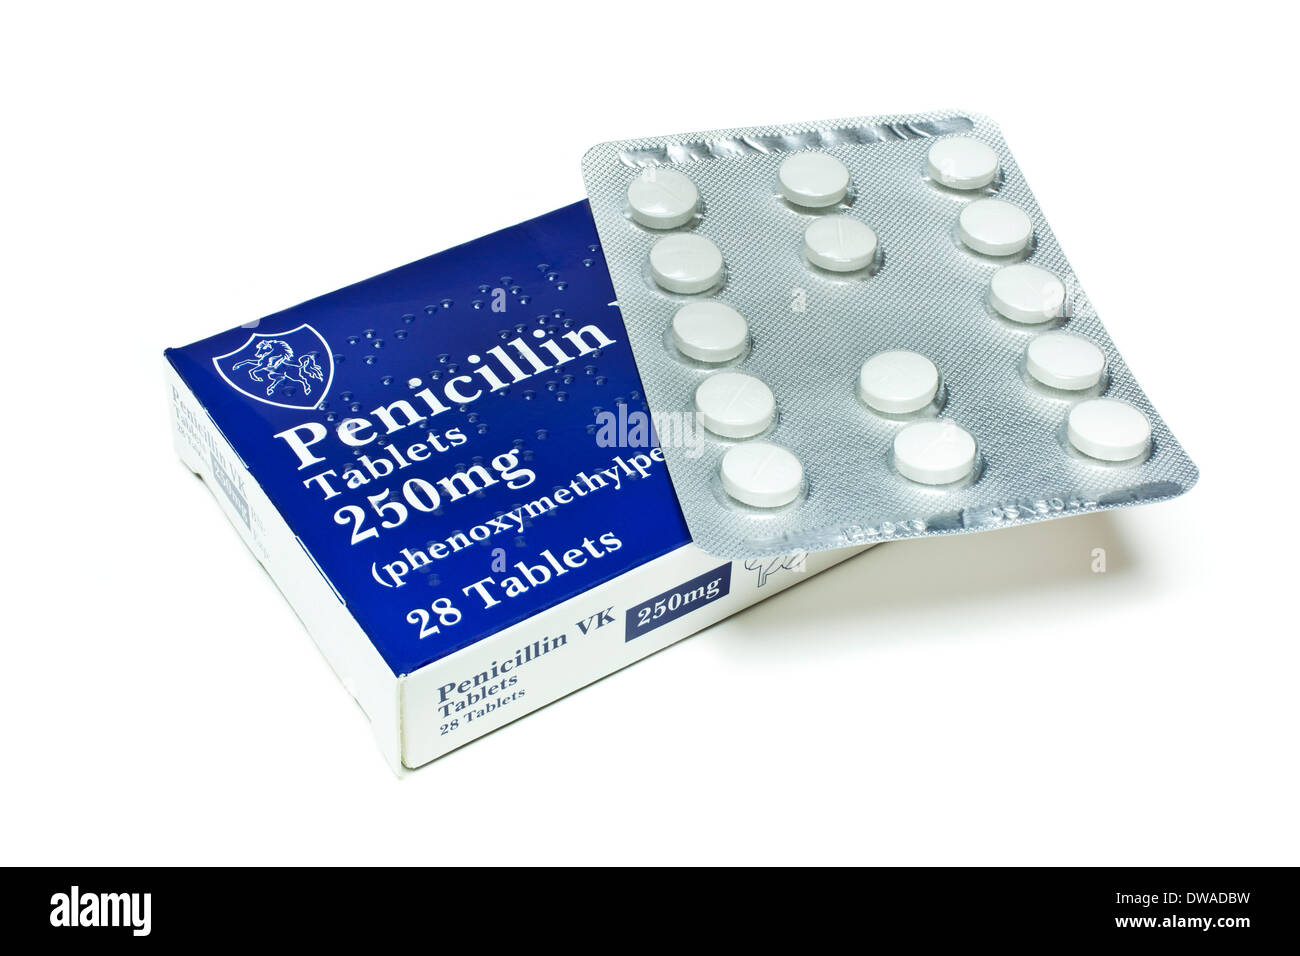 Penicillin-Antibiotika Packung mit 28 Penicillin-vk-Tabletten Antibiotikatabletten Antibiotika auf einem weißen Hintergrund Strepa A-Antibiotika Stockfoto